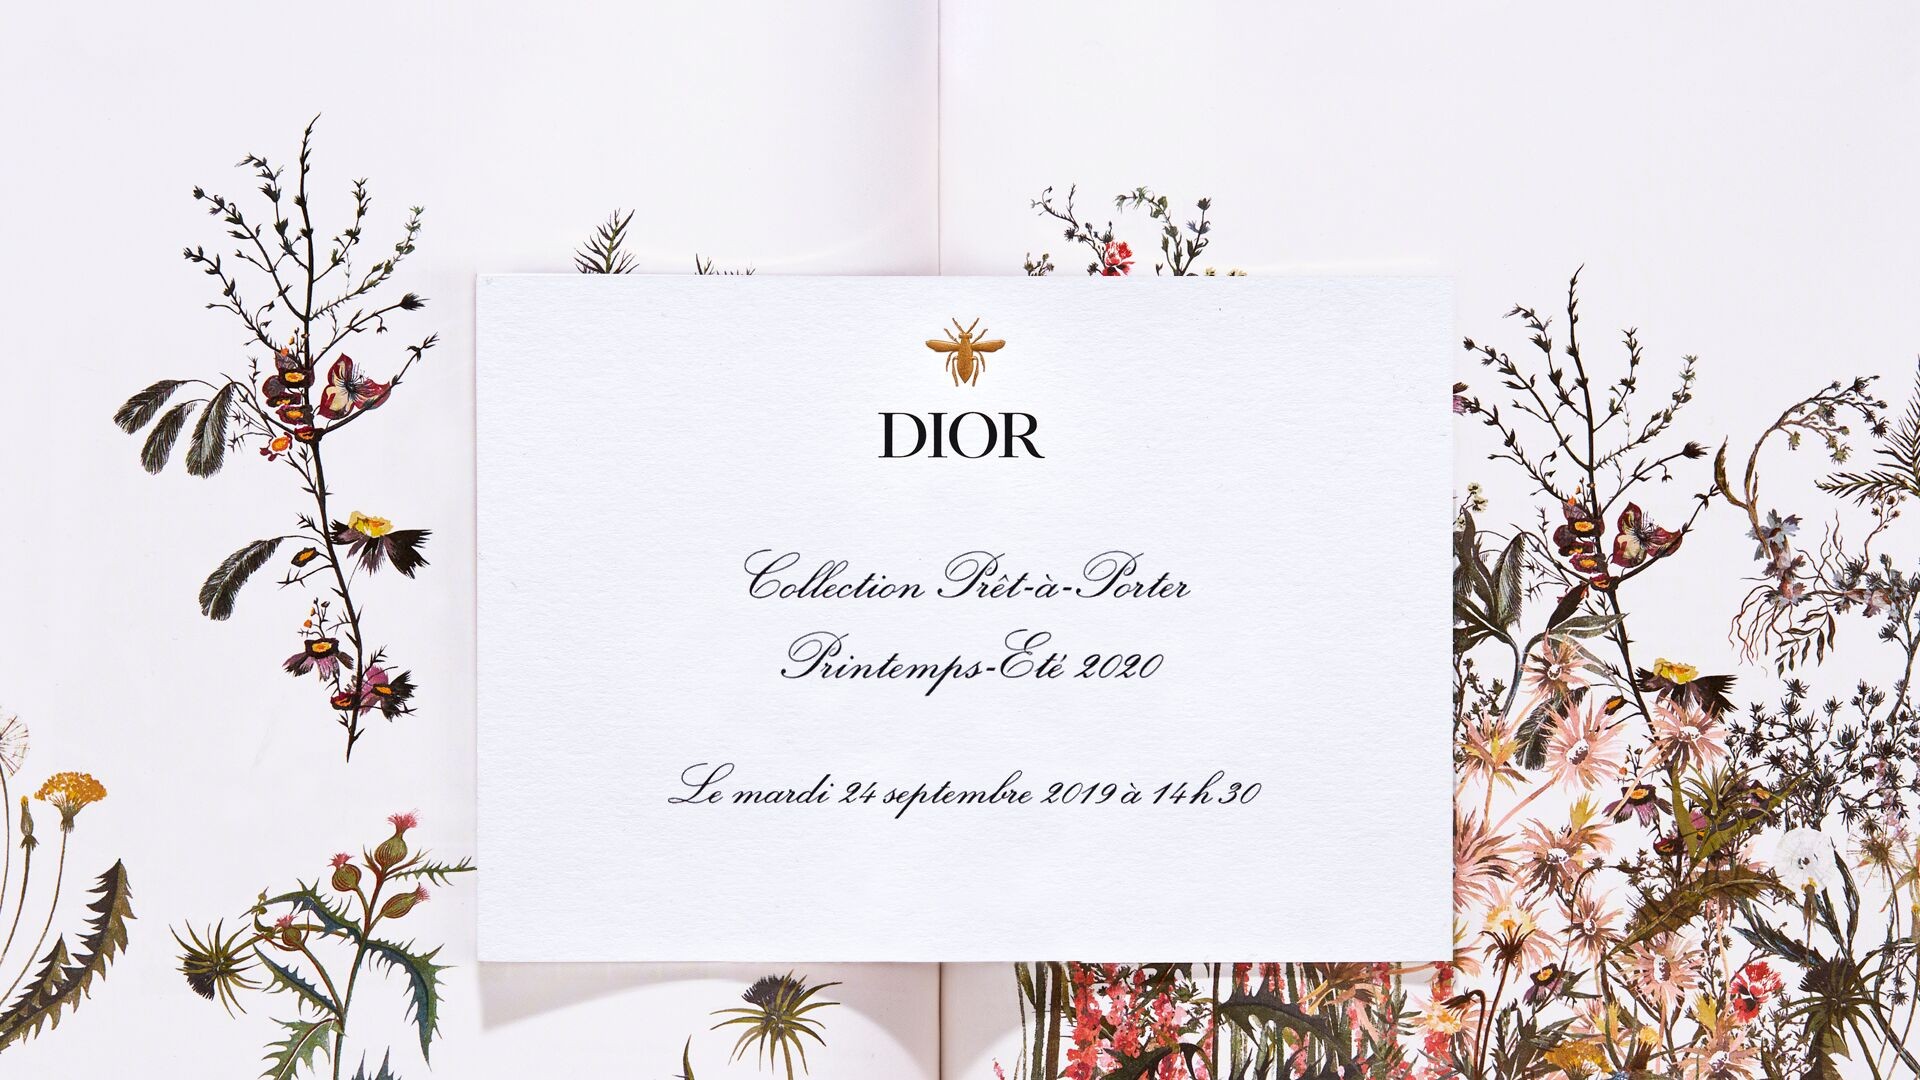 Смотрим показ Dior весна-лето 2020 в прямом эфире